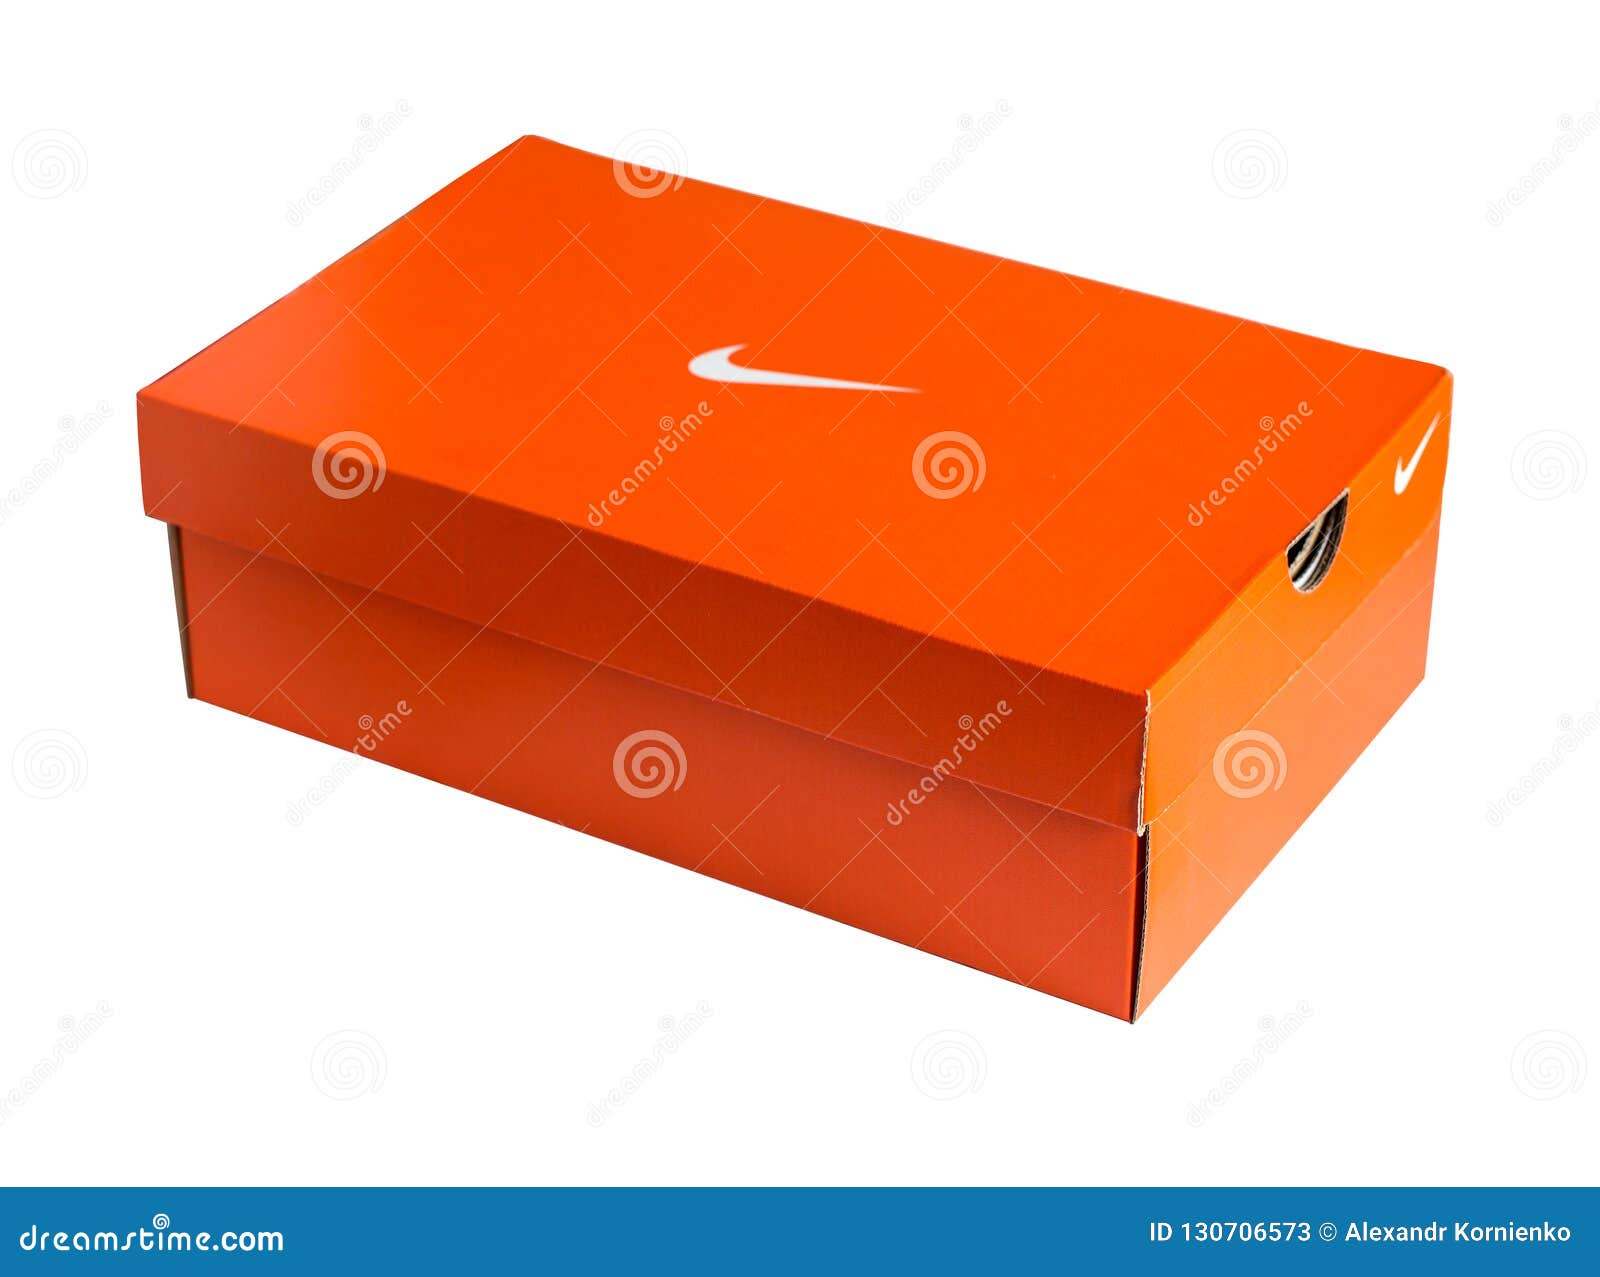 有没有什么Nike鞋盒特别好看的？ - 知乎